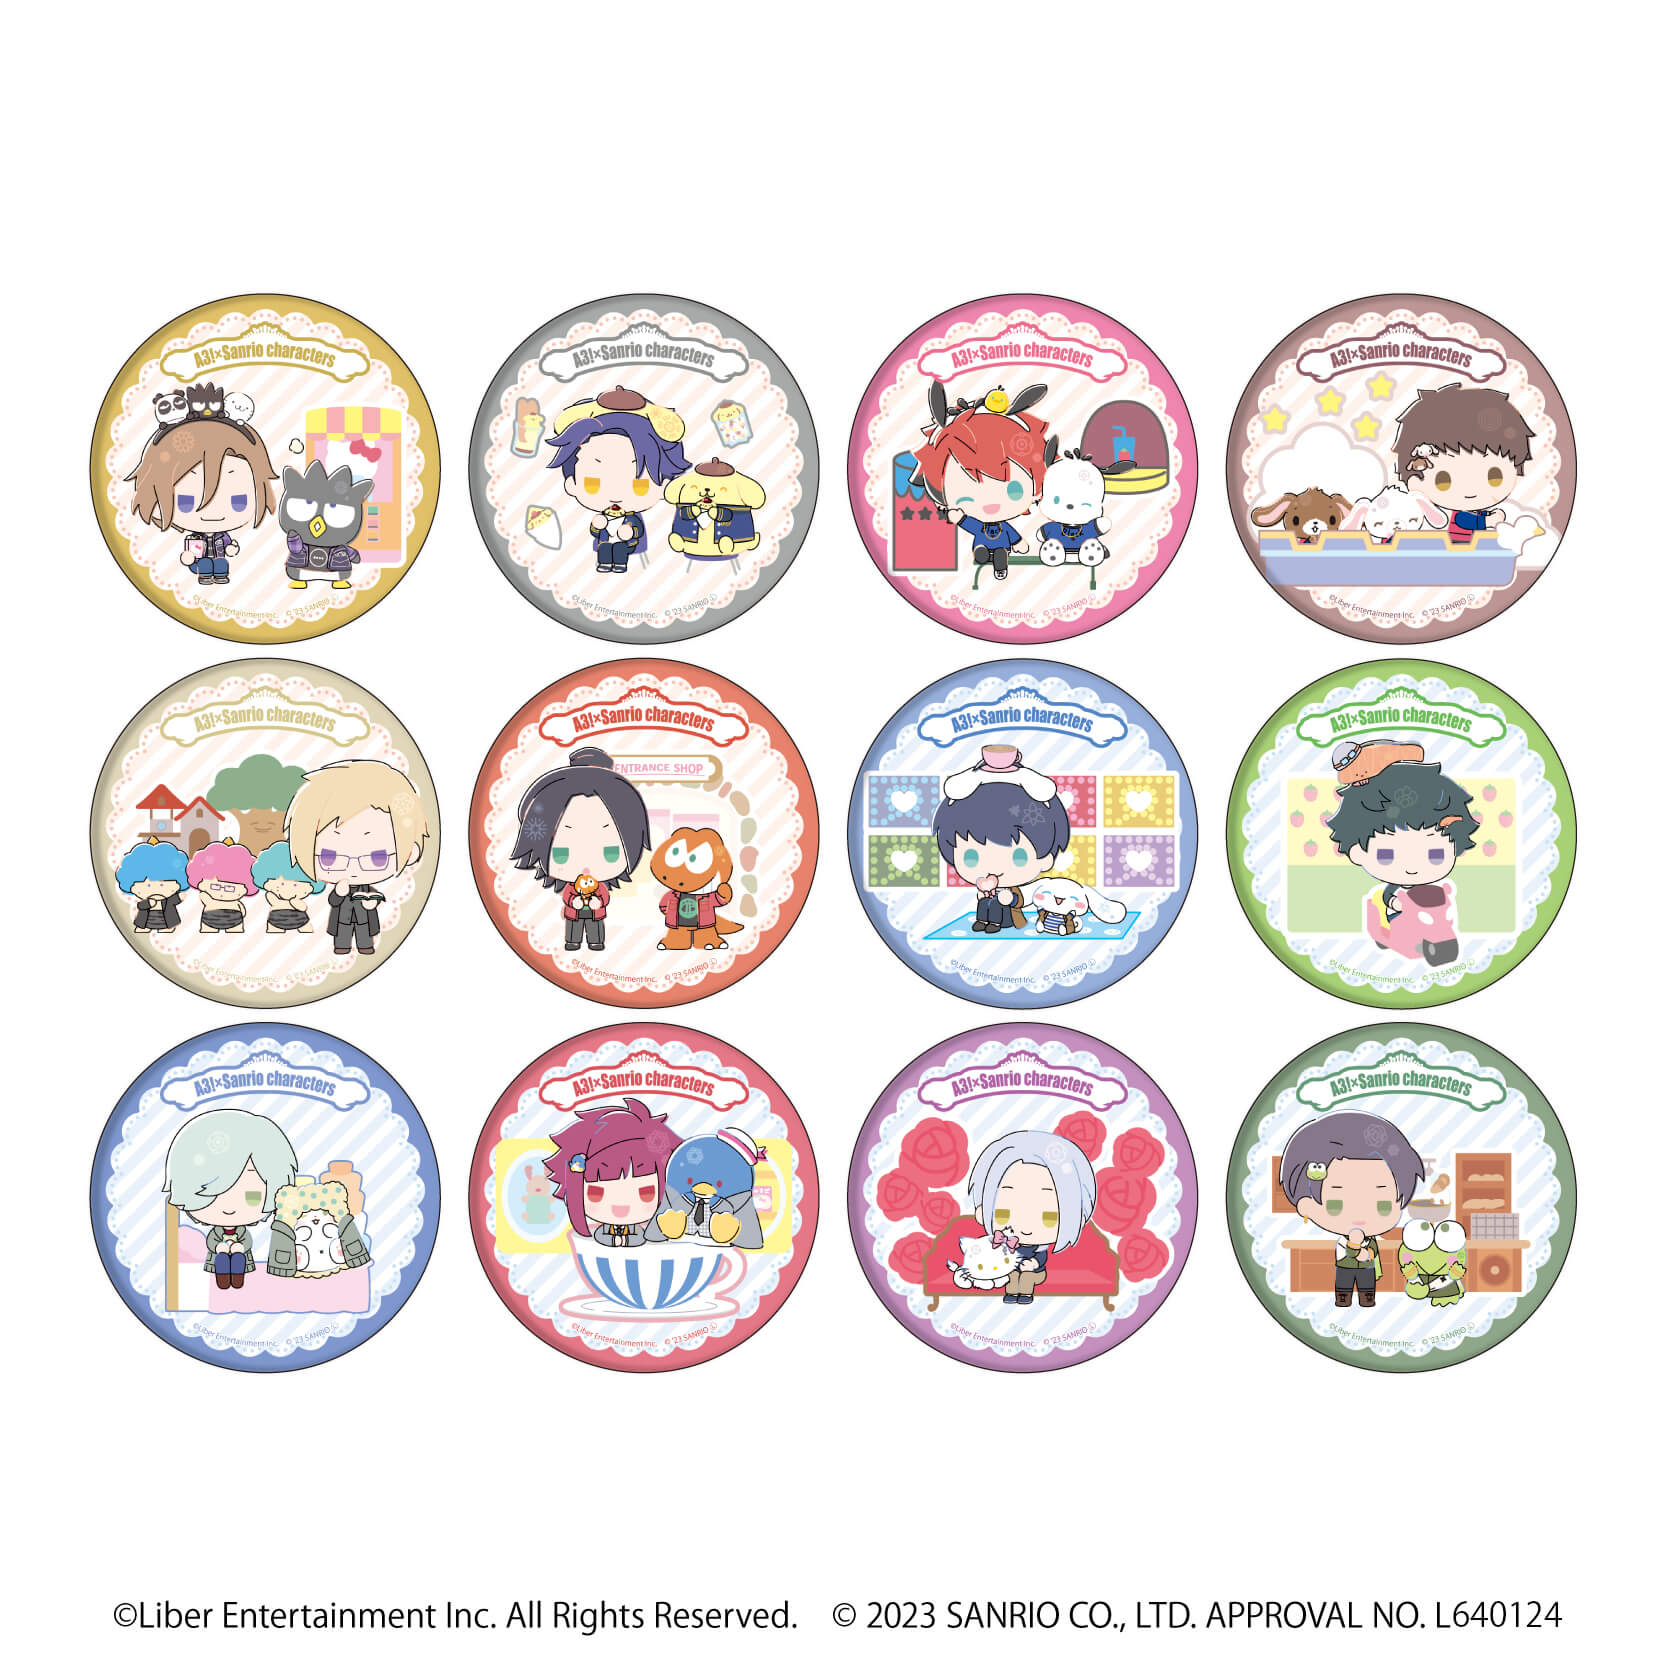 缶バッジ「A3!×Sanrio characters」04/A＆W ブラインド(12種)